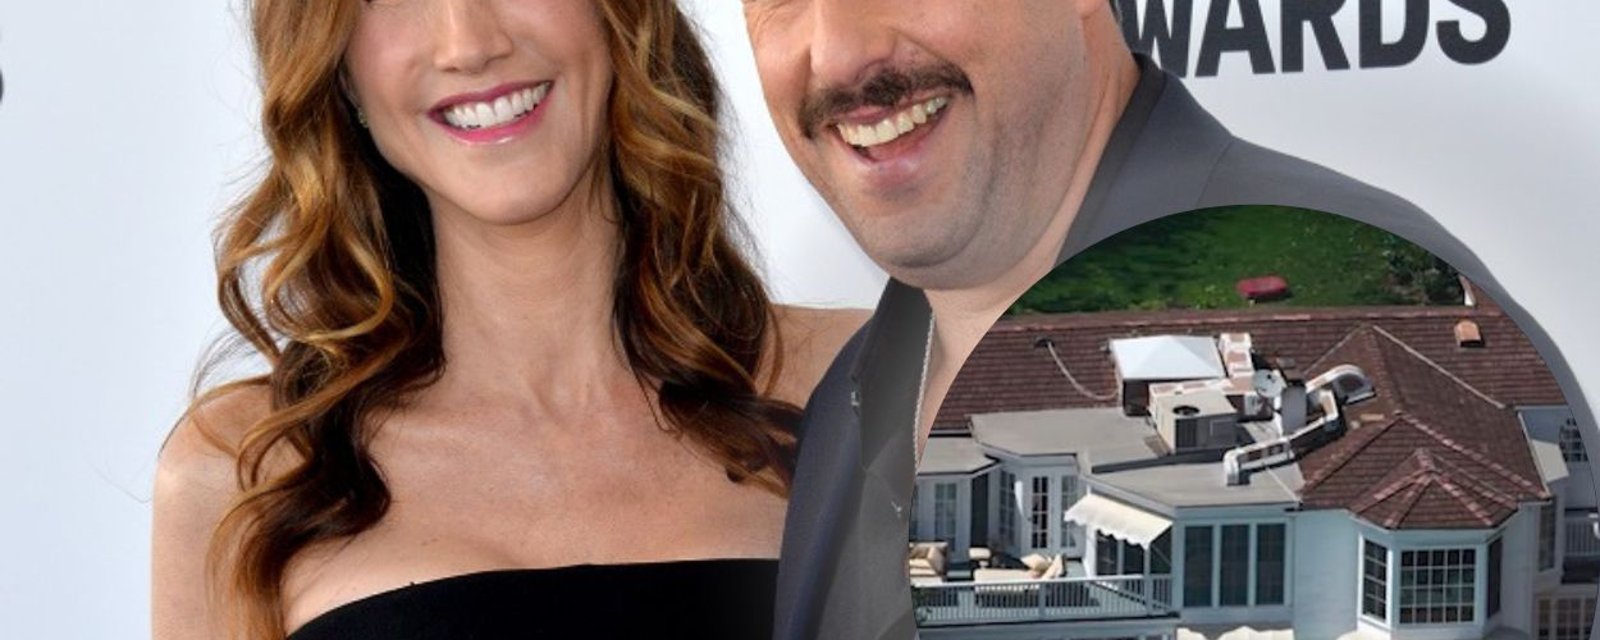 Adam Sandler a acheté un impressionnant manoir de 12 millions de dollars comme cadeau à sa femme